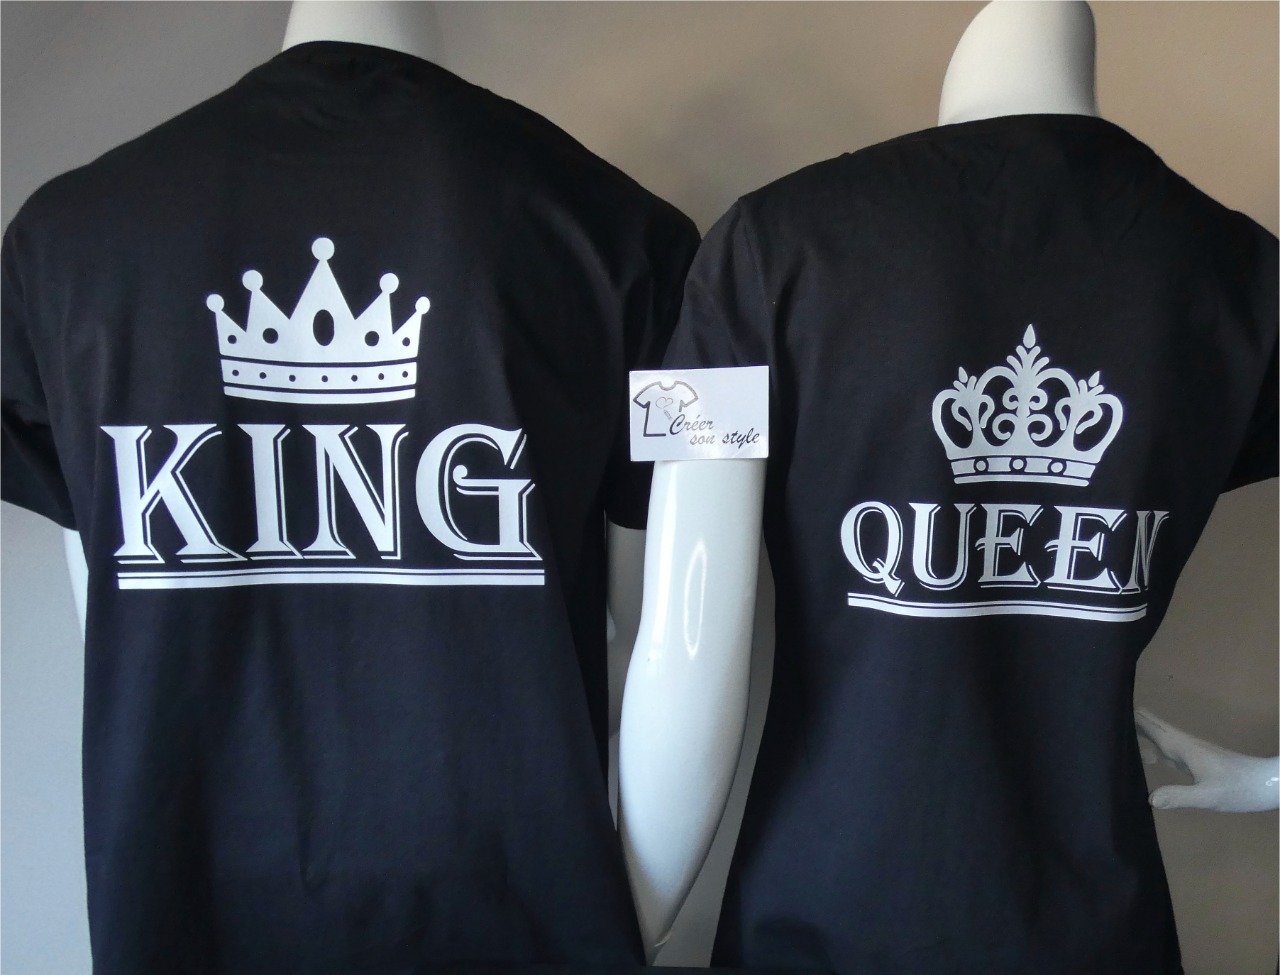 Duo "King - Queen"